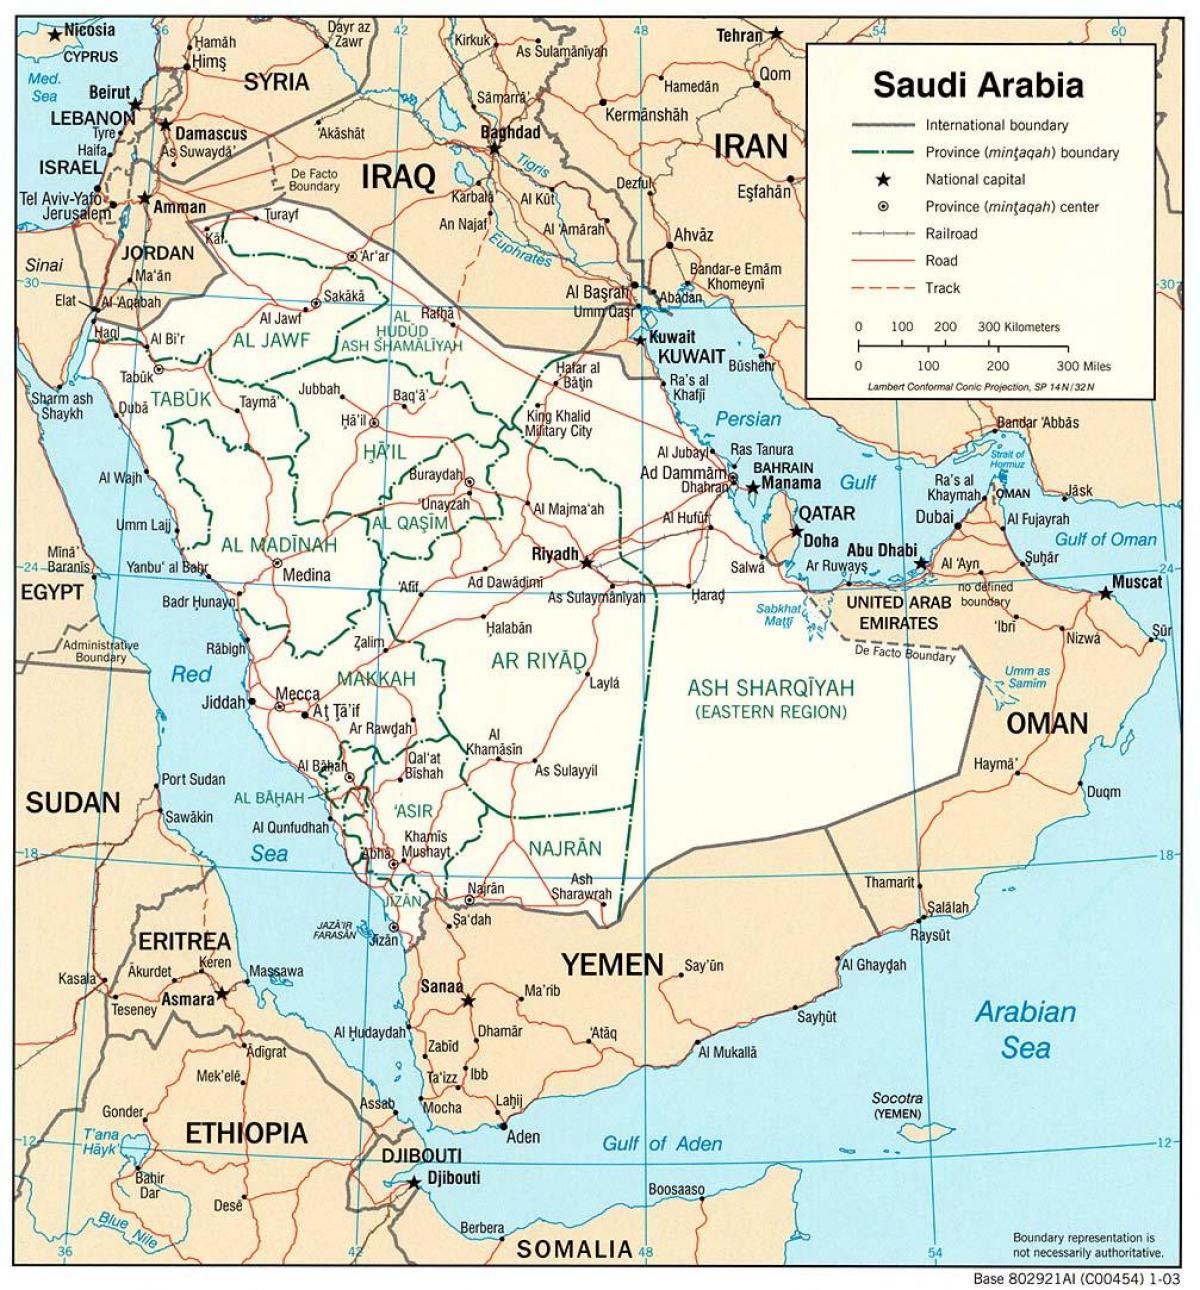 Saudi Arabia kamili ya ramani